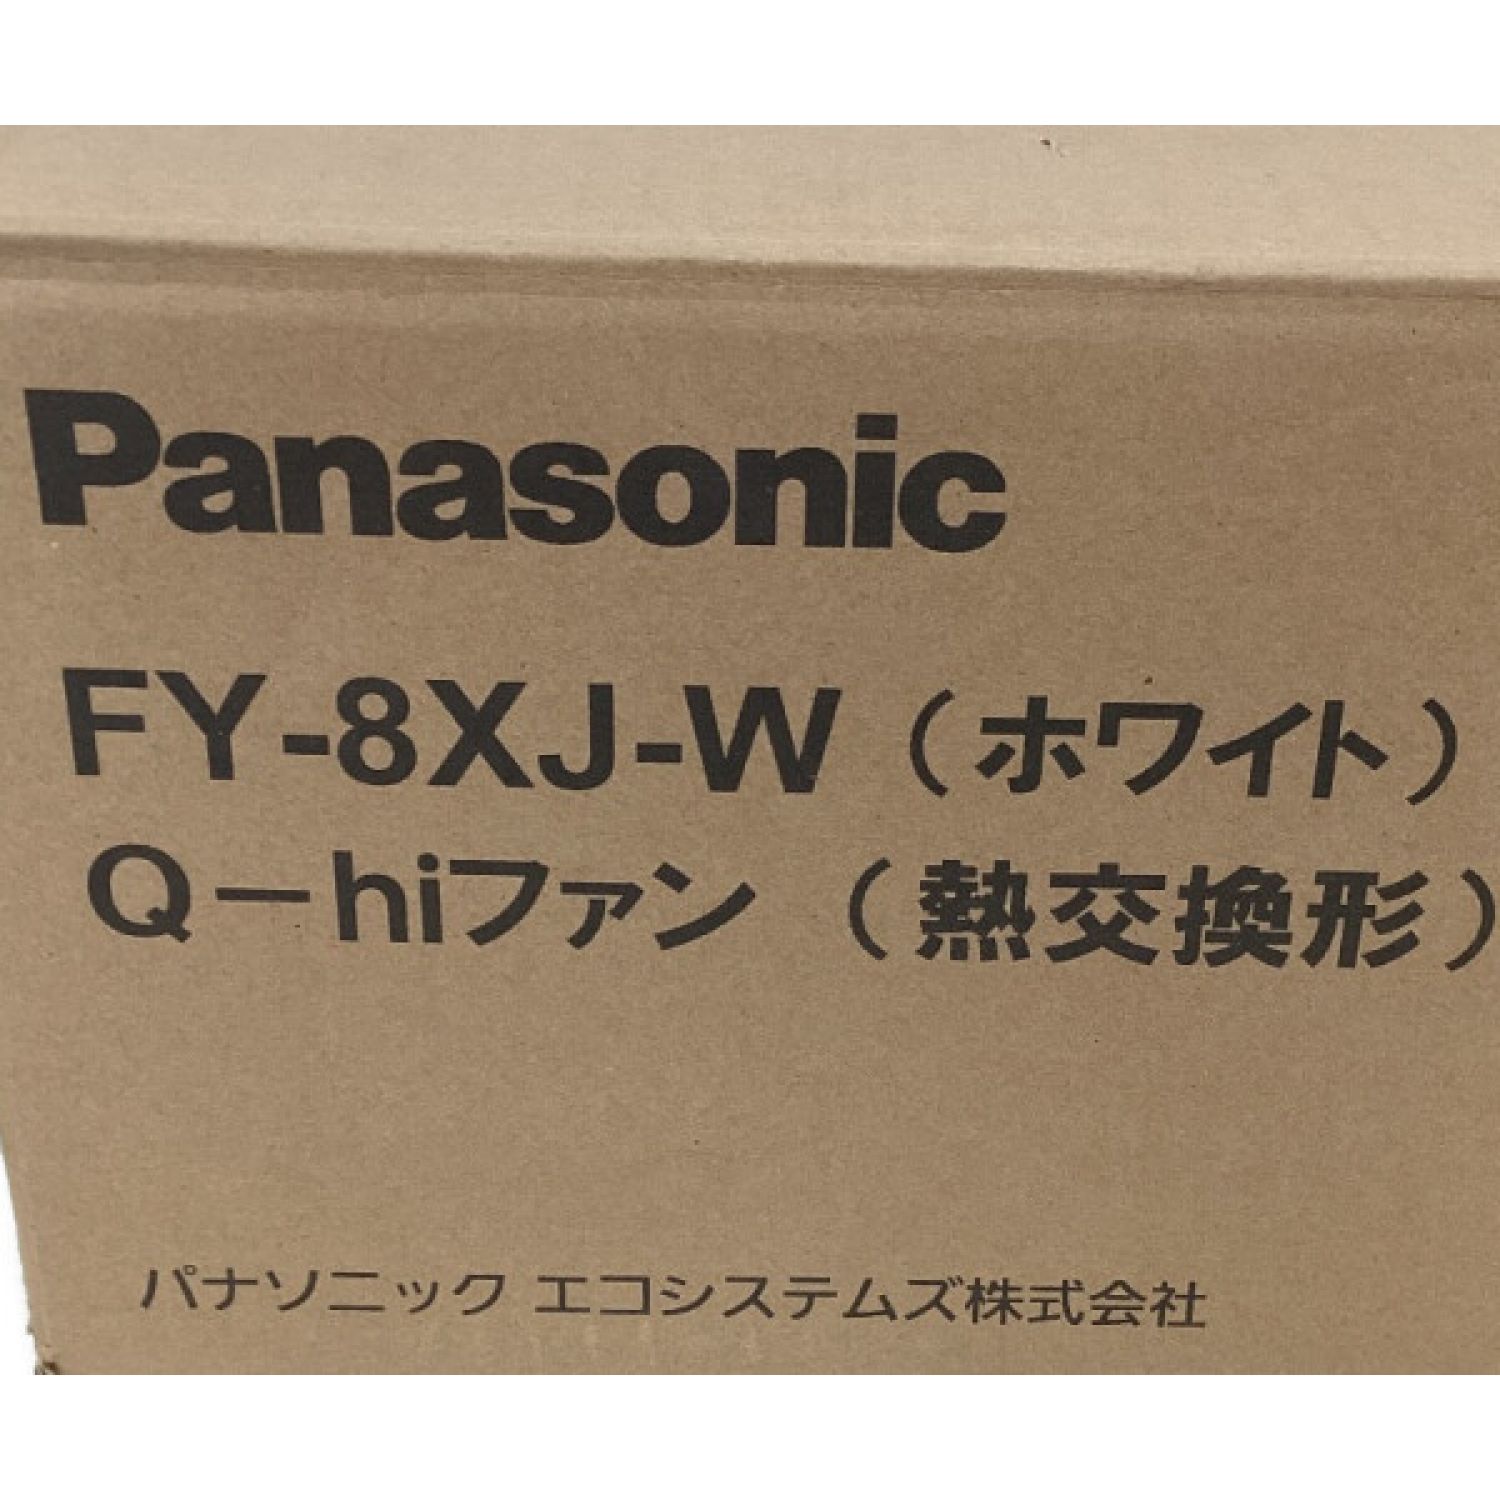 無料発送 Panasonic Q-hiファン 熱交換形 FY-6WJ